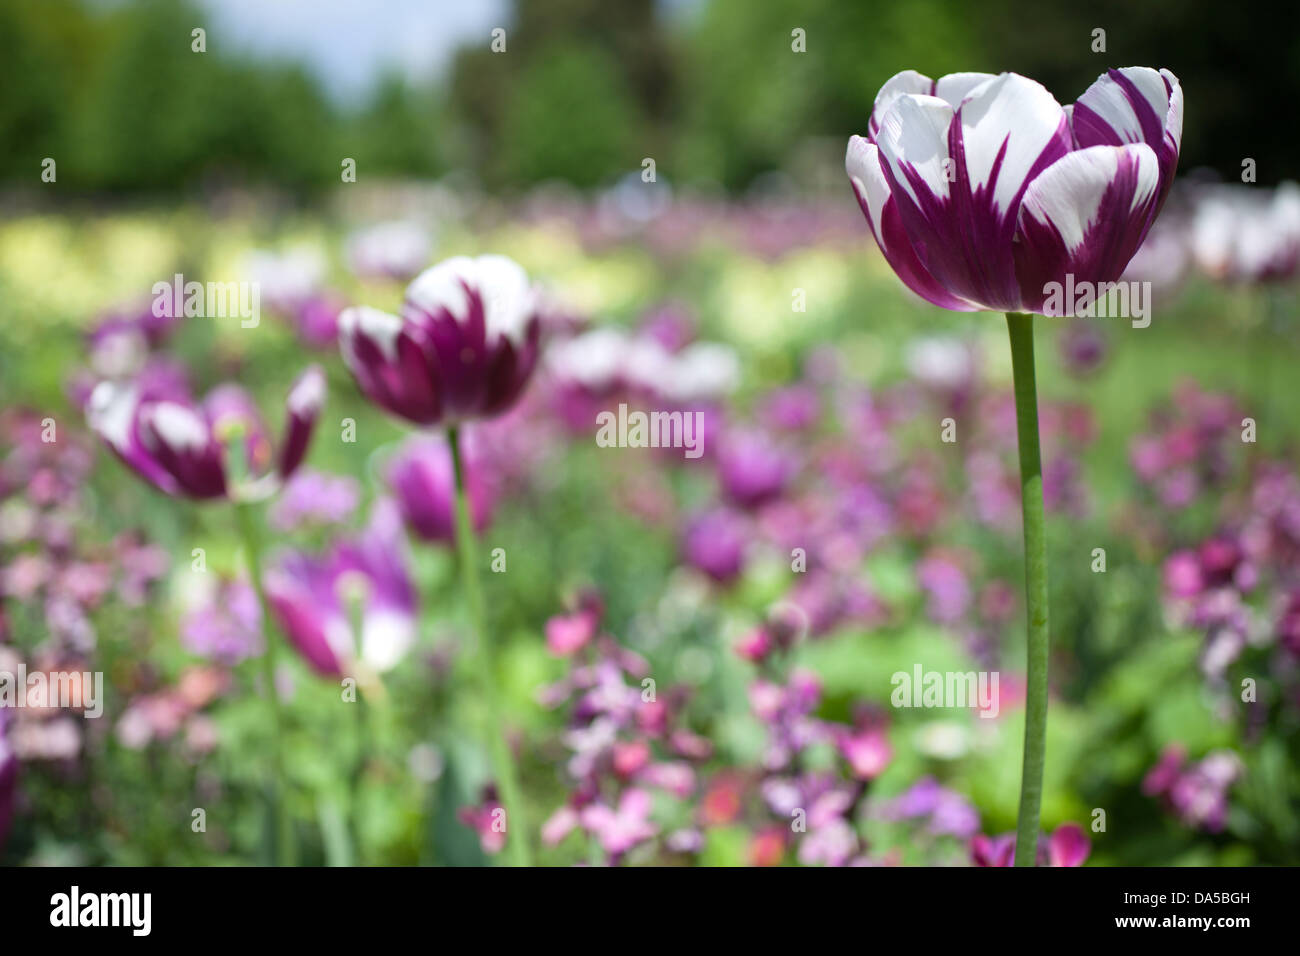 Tulipes violet et blanc, Christ's pieces park Cambridge en Angleterre, Royaume-Uni Banque D'Images